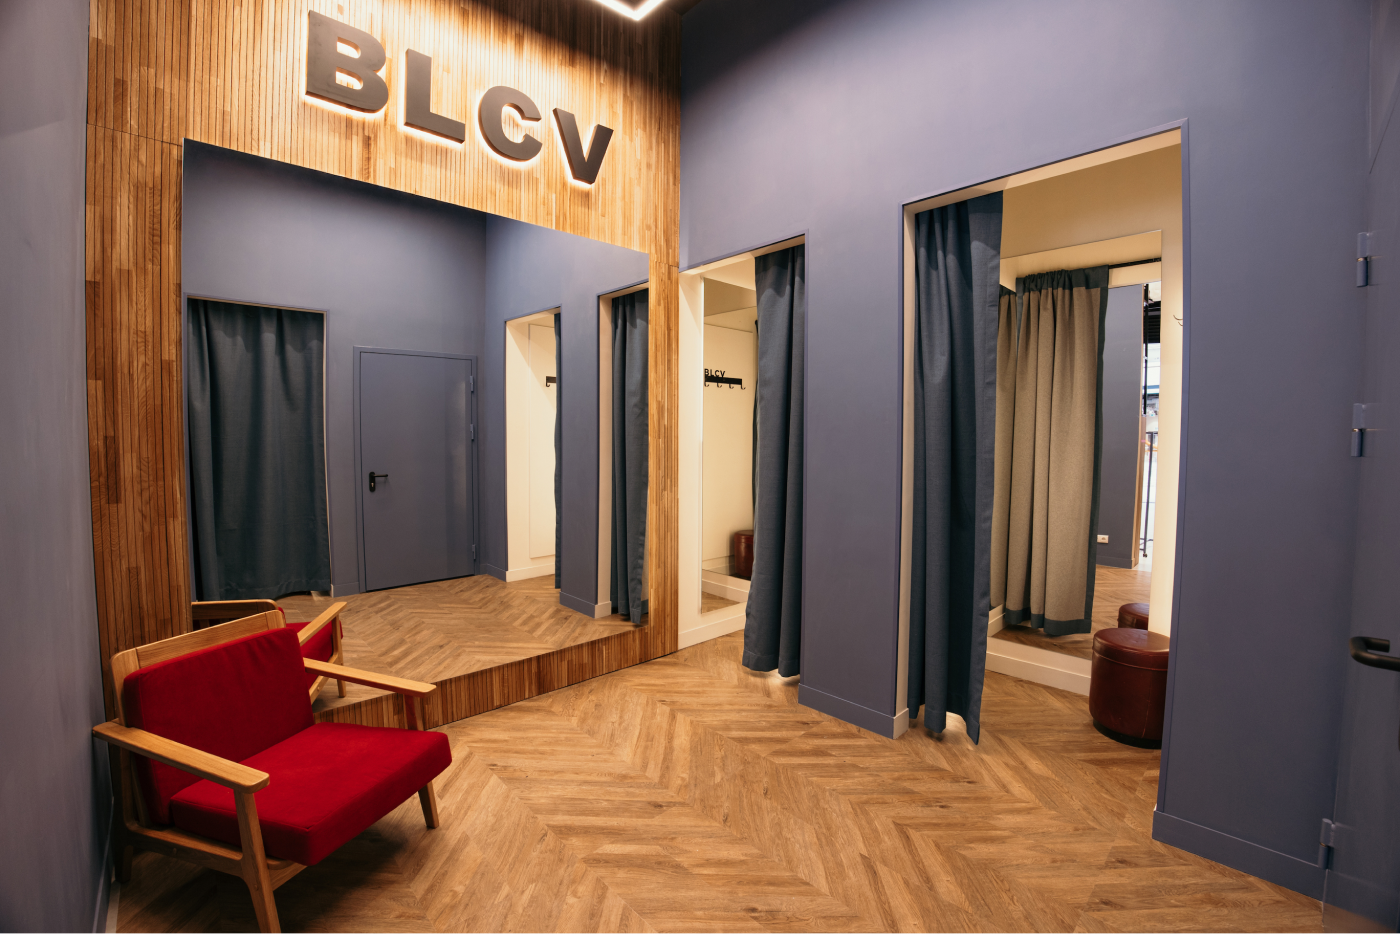 Бренд BLCV открыл первый флагманский магазин в Москве (фото 3)